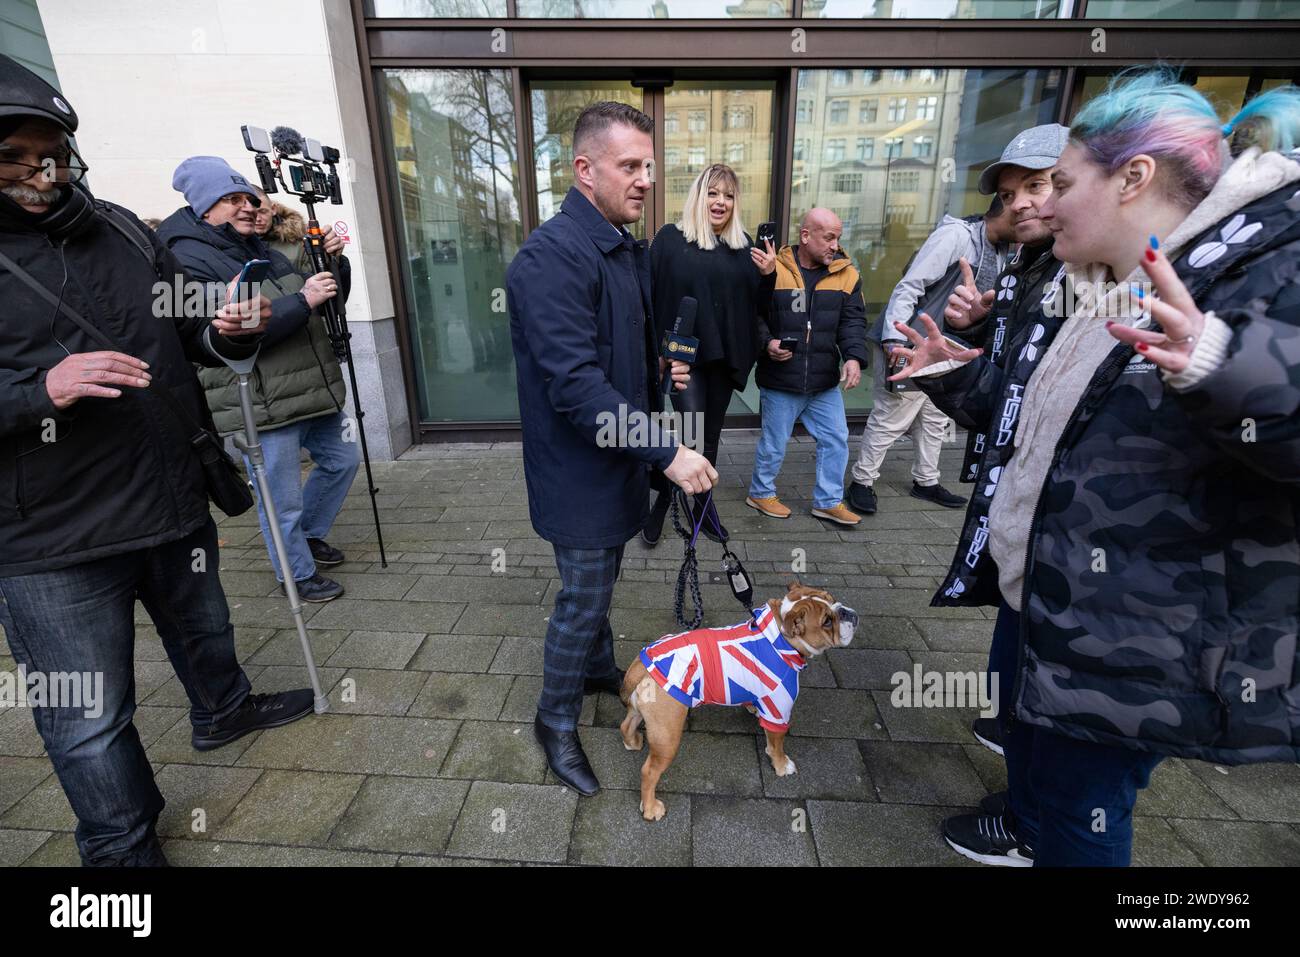 Les fans de Tommy Robinson attendent devant le tribunal de première instance de Westminster avec leur Bulldog britannique pour saluer le leader anglais de la défense, Londres, Royaume-Uni Banque D'Images